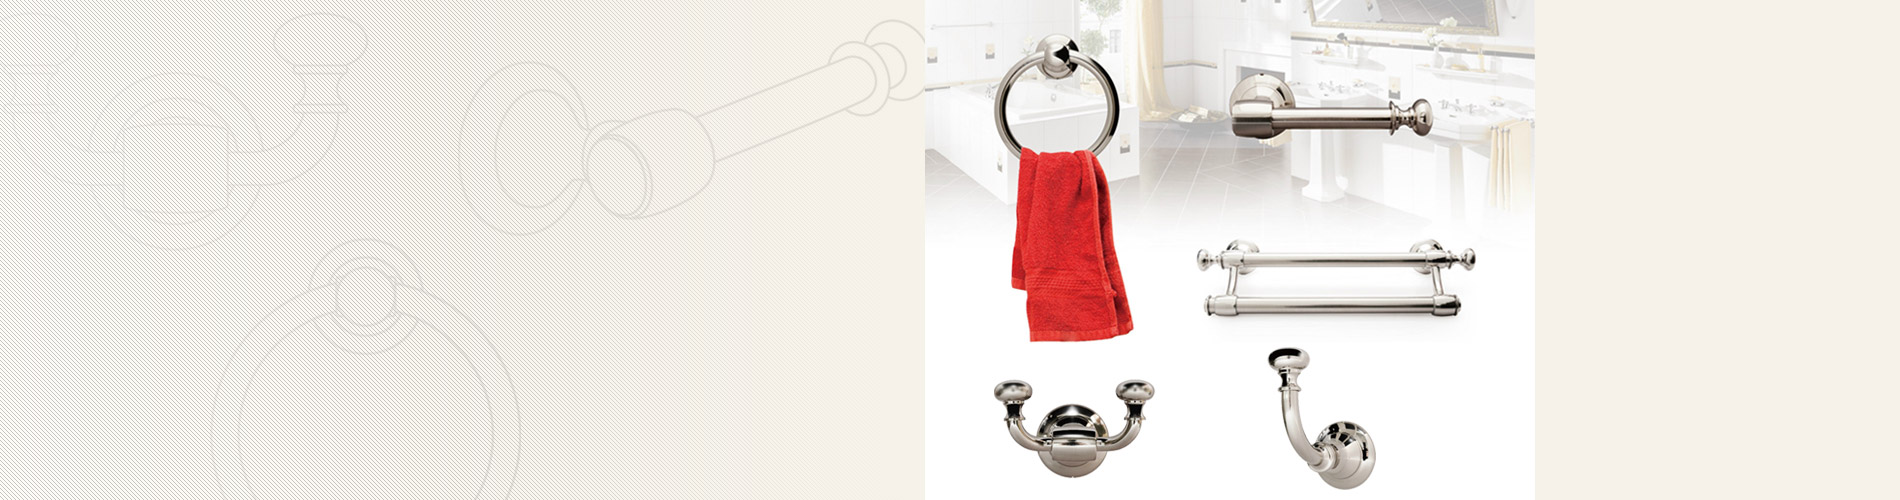 Badezimmer-Hardware Unsere Badezimmerausstattung umfasst Einzel-/Doppelhandtuchhalter, Handtuchring, Taschentuchhalter und Kleiderhaken.